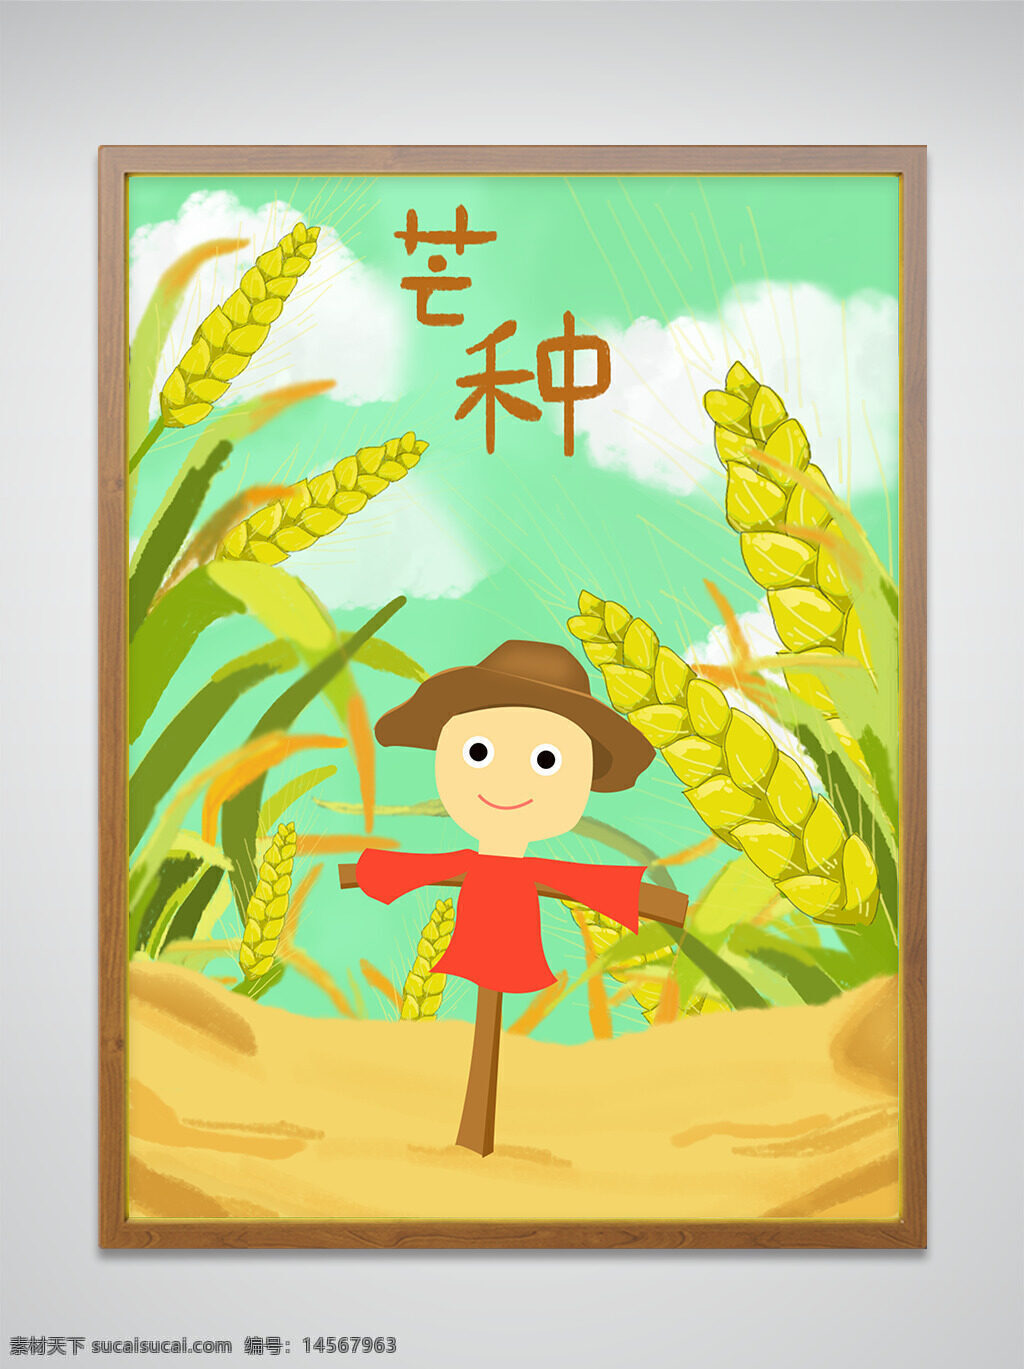 24 节气 芒种 小麦 稻草人 插画 手绘 二十四 节日节气 收获